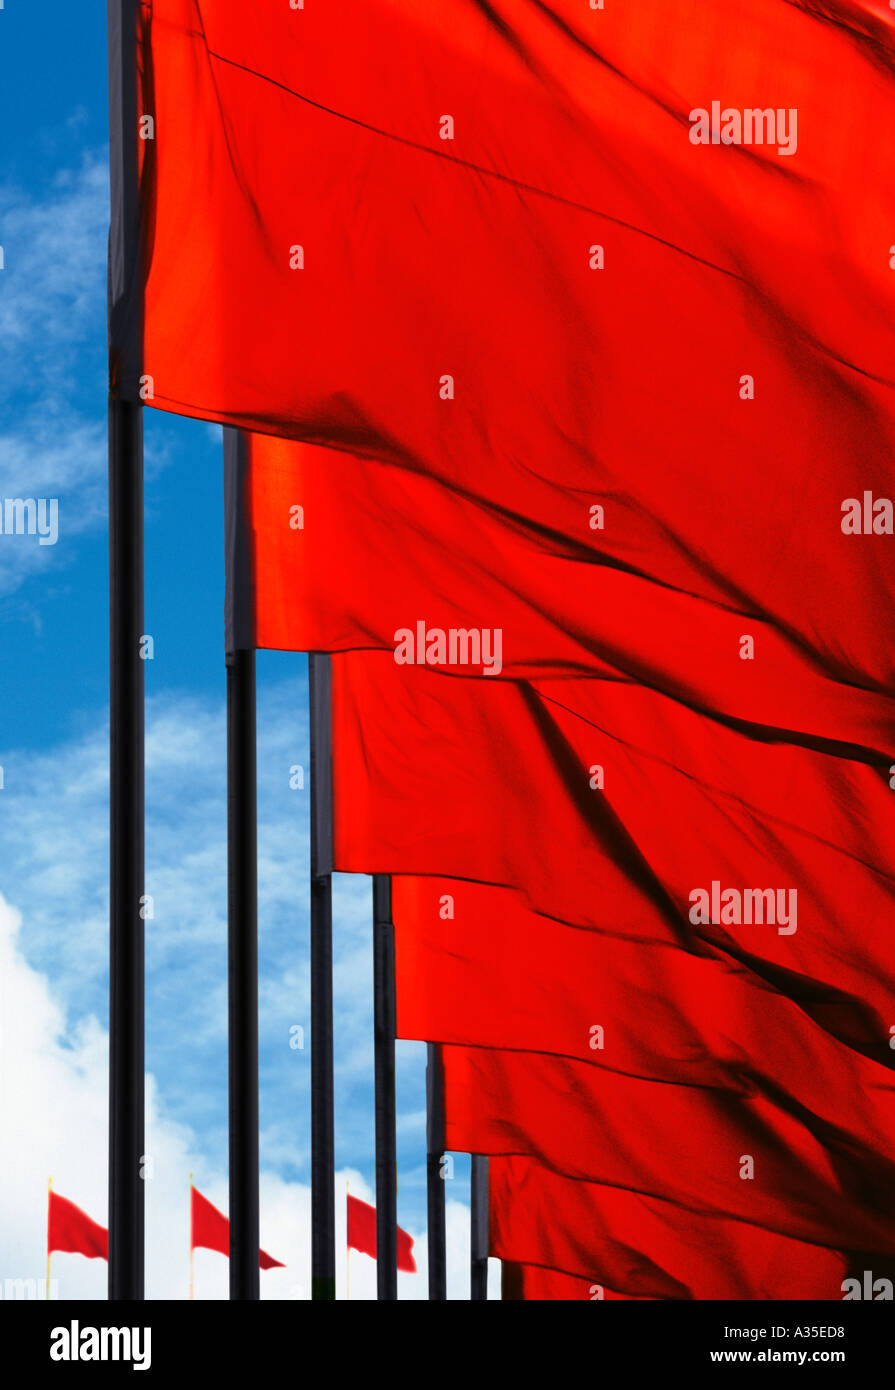 Drapeaux Rouges En Vol, Place Tiananmen, Pékin, Chine. Symbole communiste. Banque D'Images